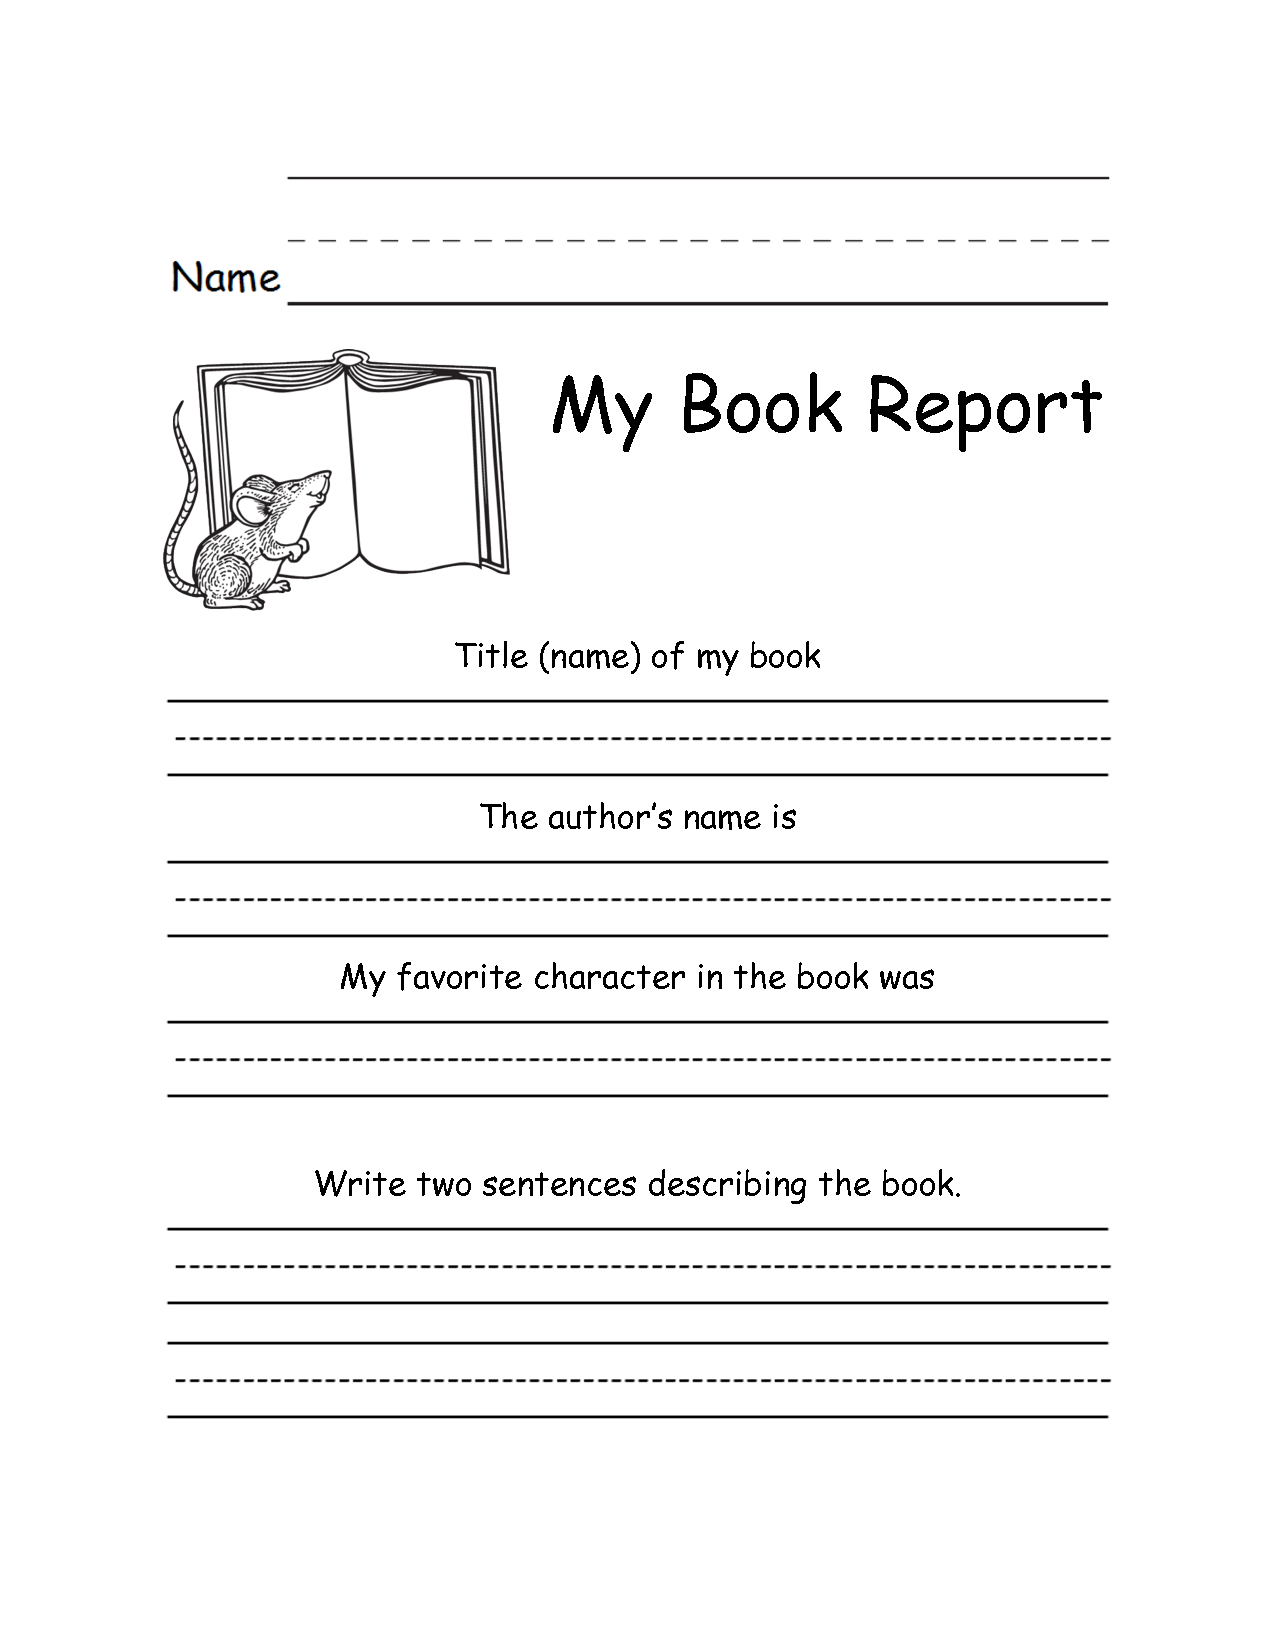 Grade 7 book reports